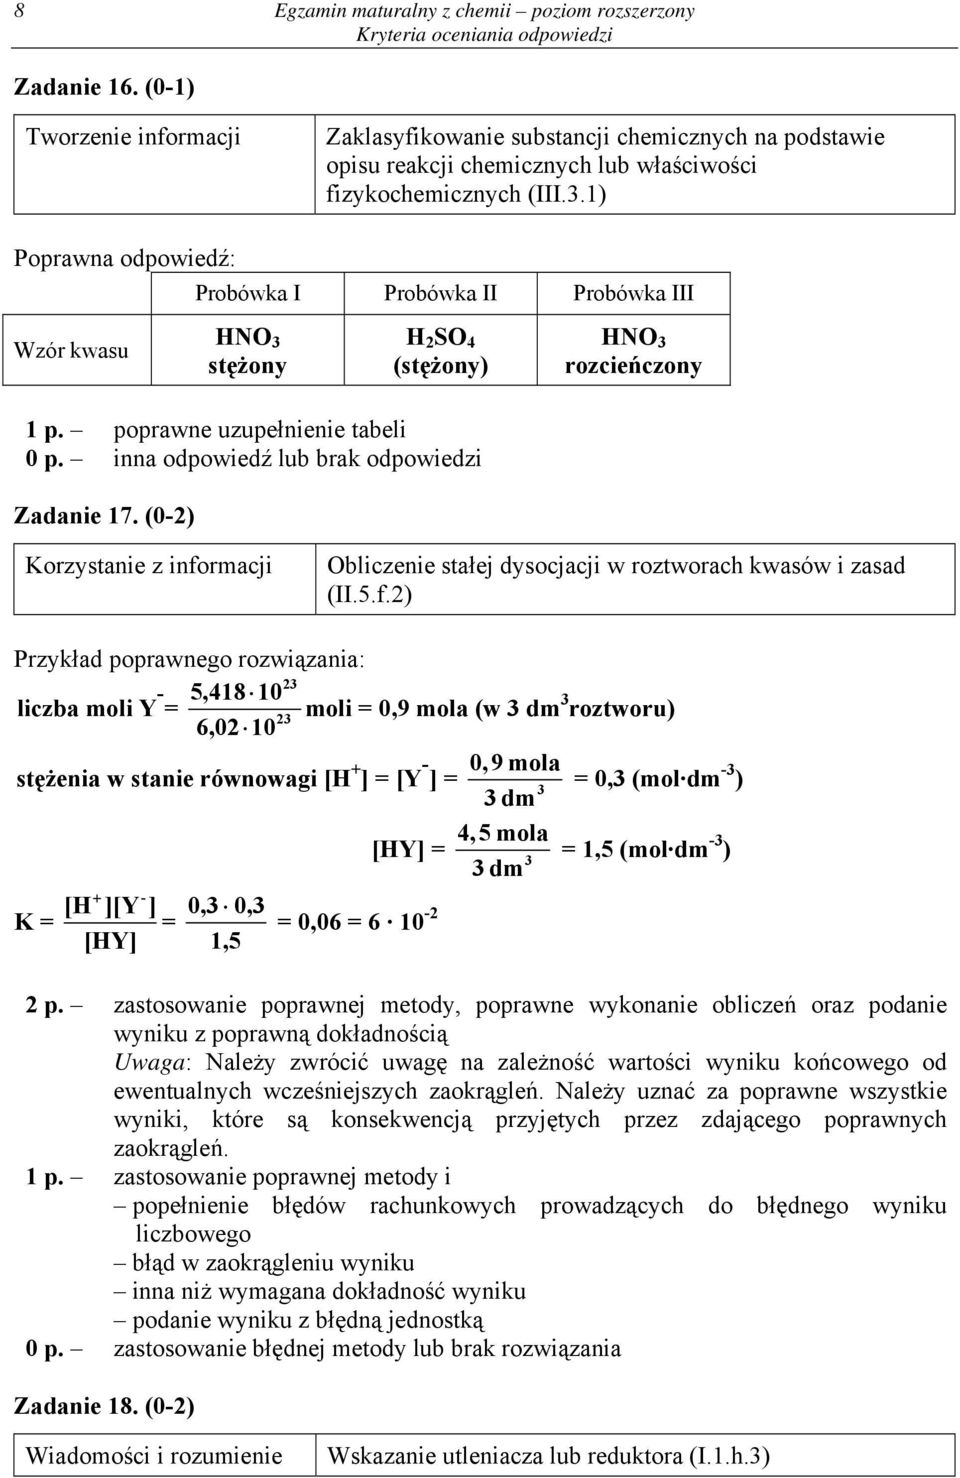 (0-2) Obliczenie stałej dysocjacji w roztworach kwasów i zasad (II.5.f.